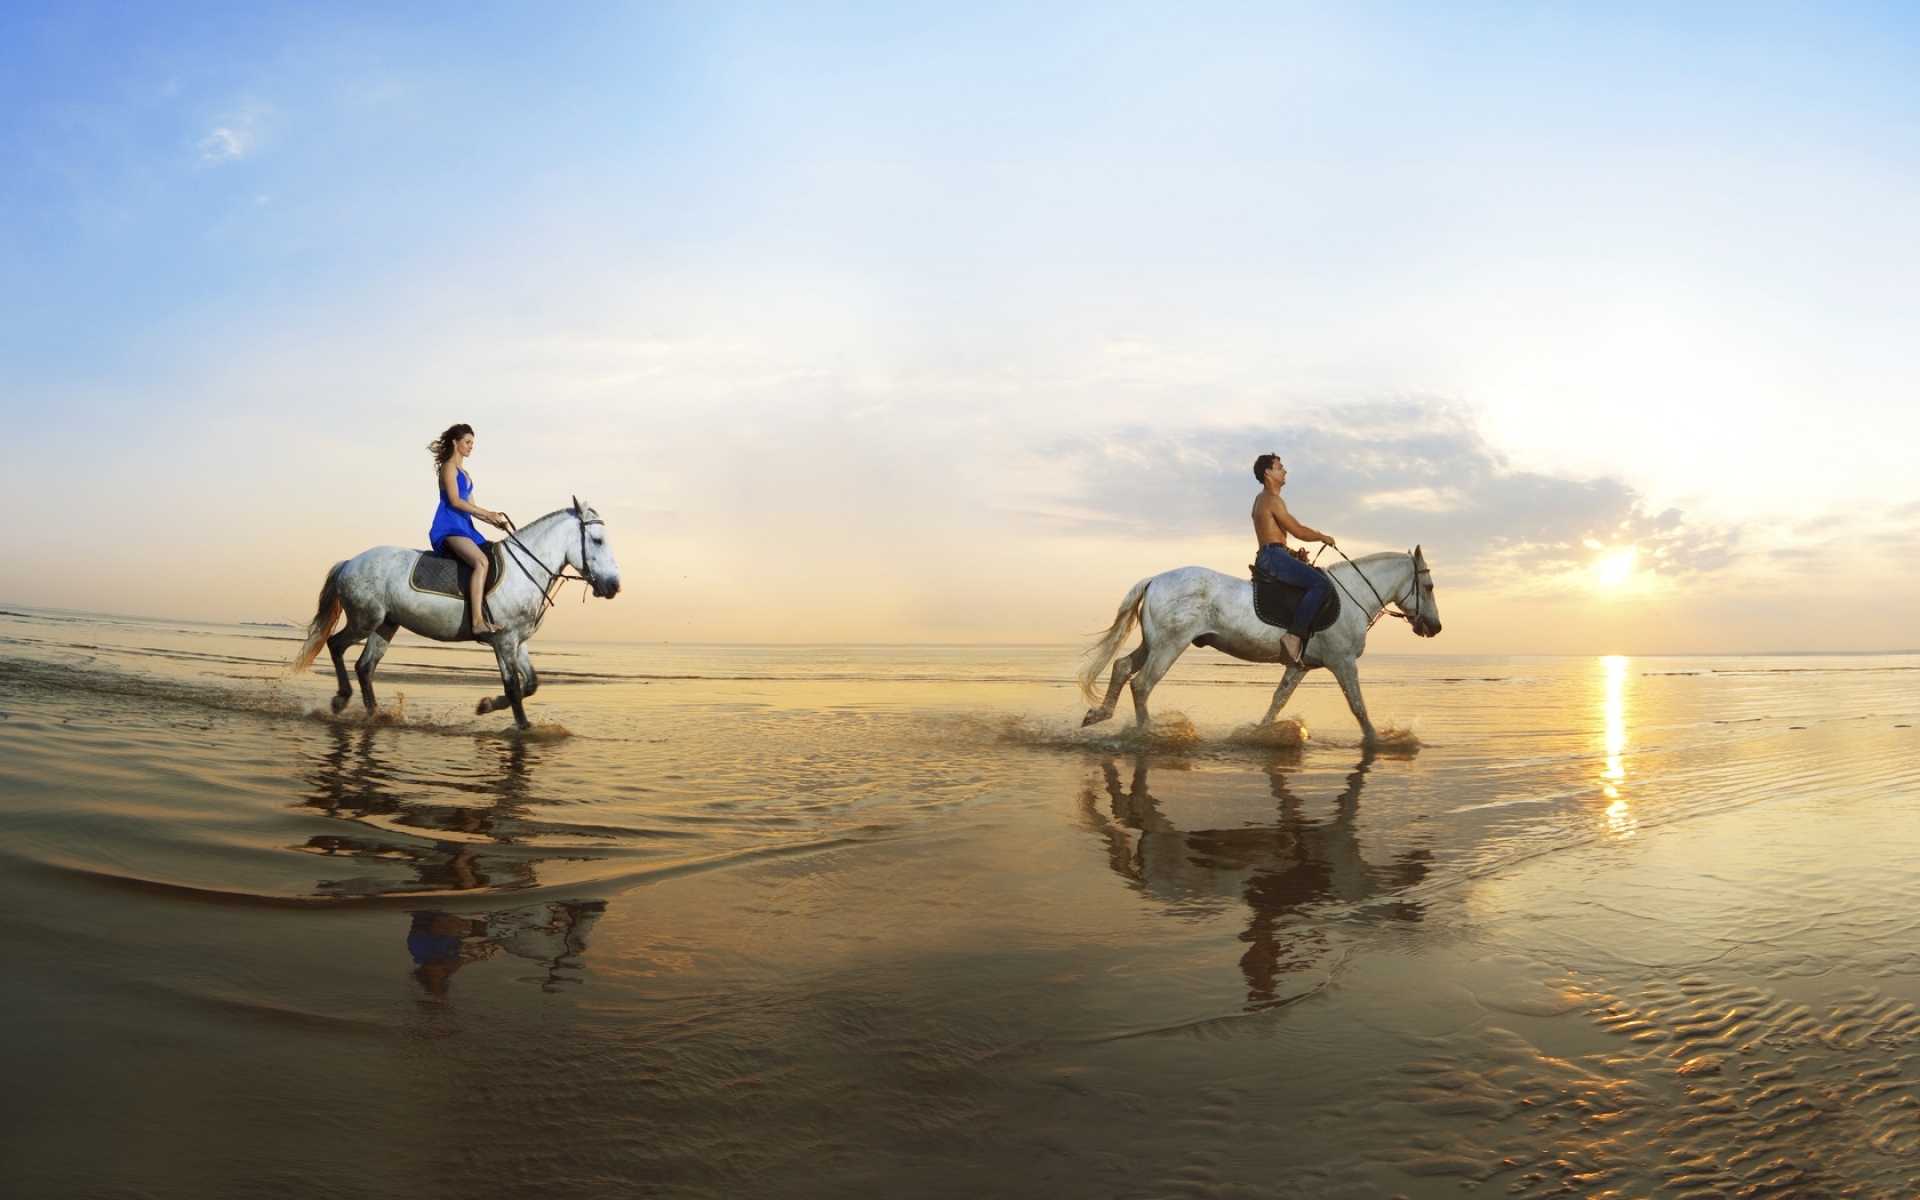 Картинки Девушка, мальчик, ходьба, пляж, лошади, море, песок, отражение фото и обои на рабочий стол